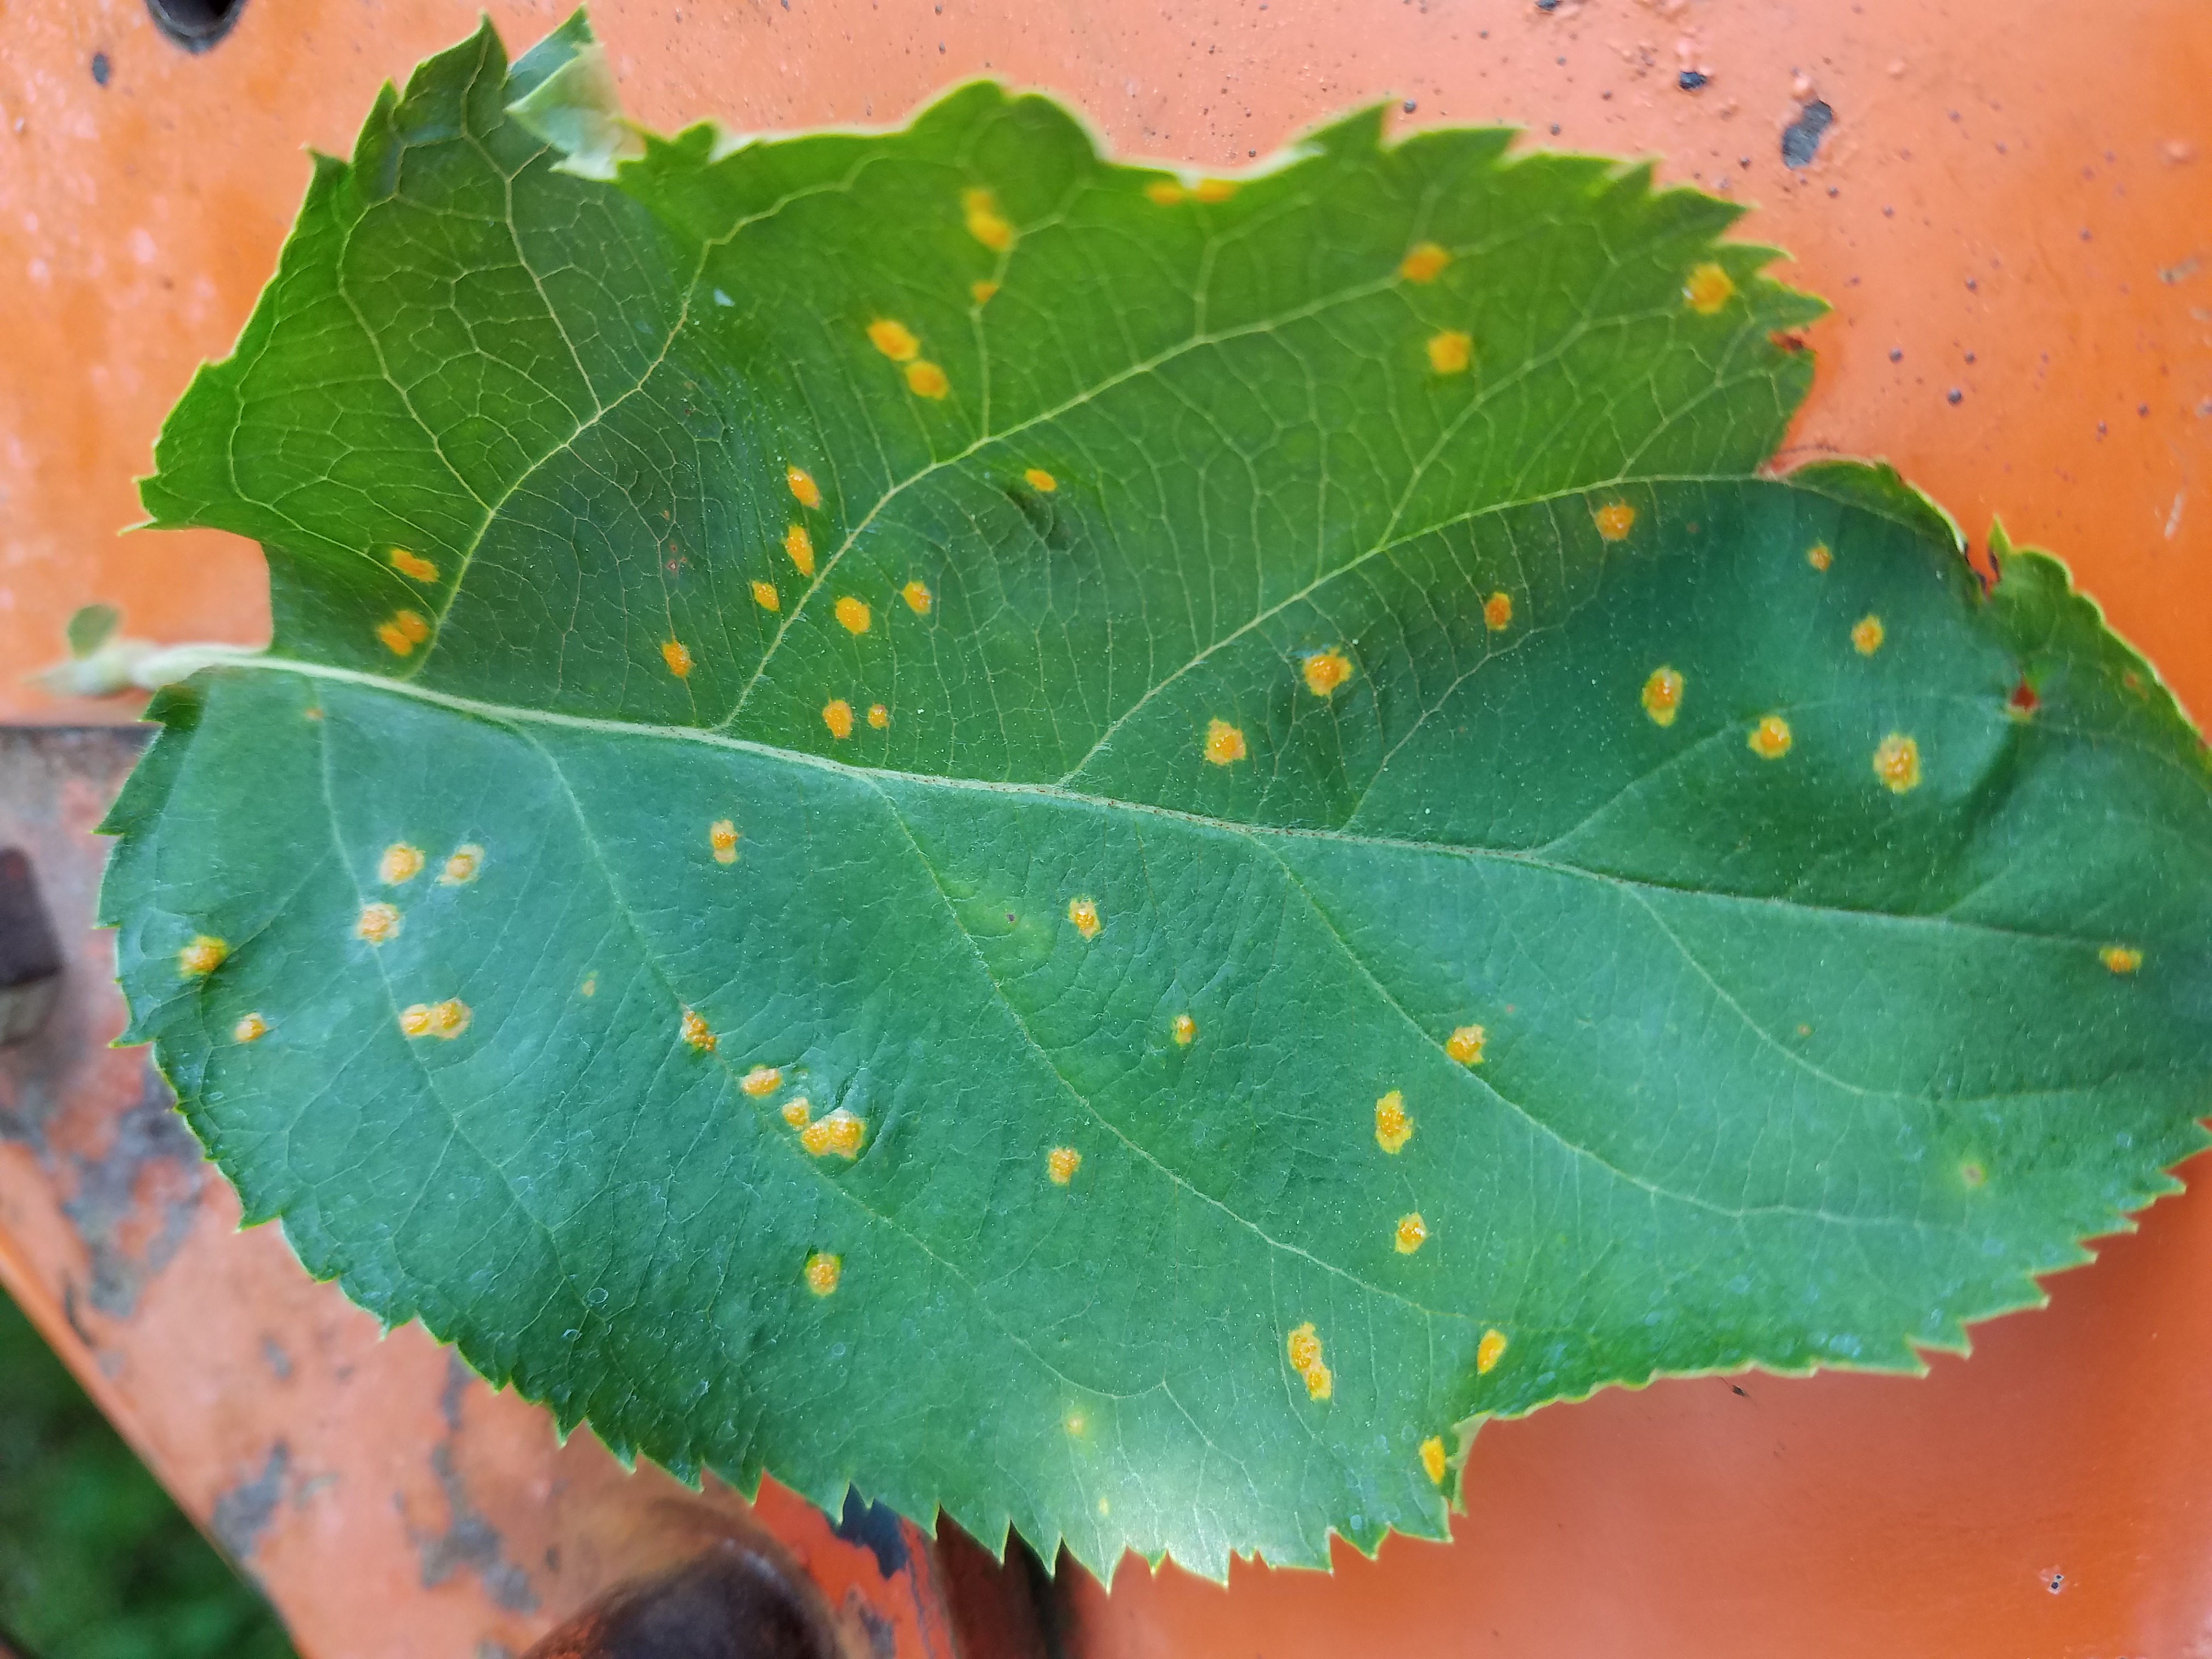 cedar apple rust on leaf